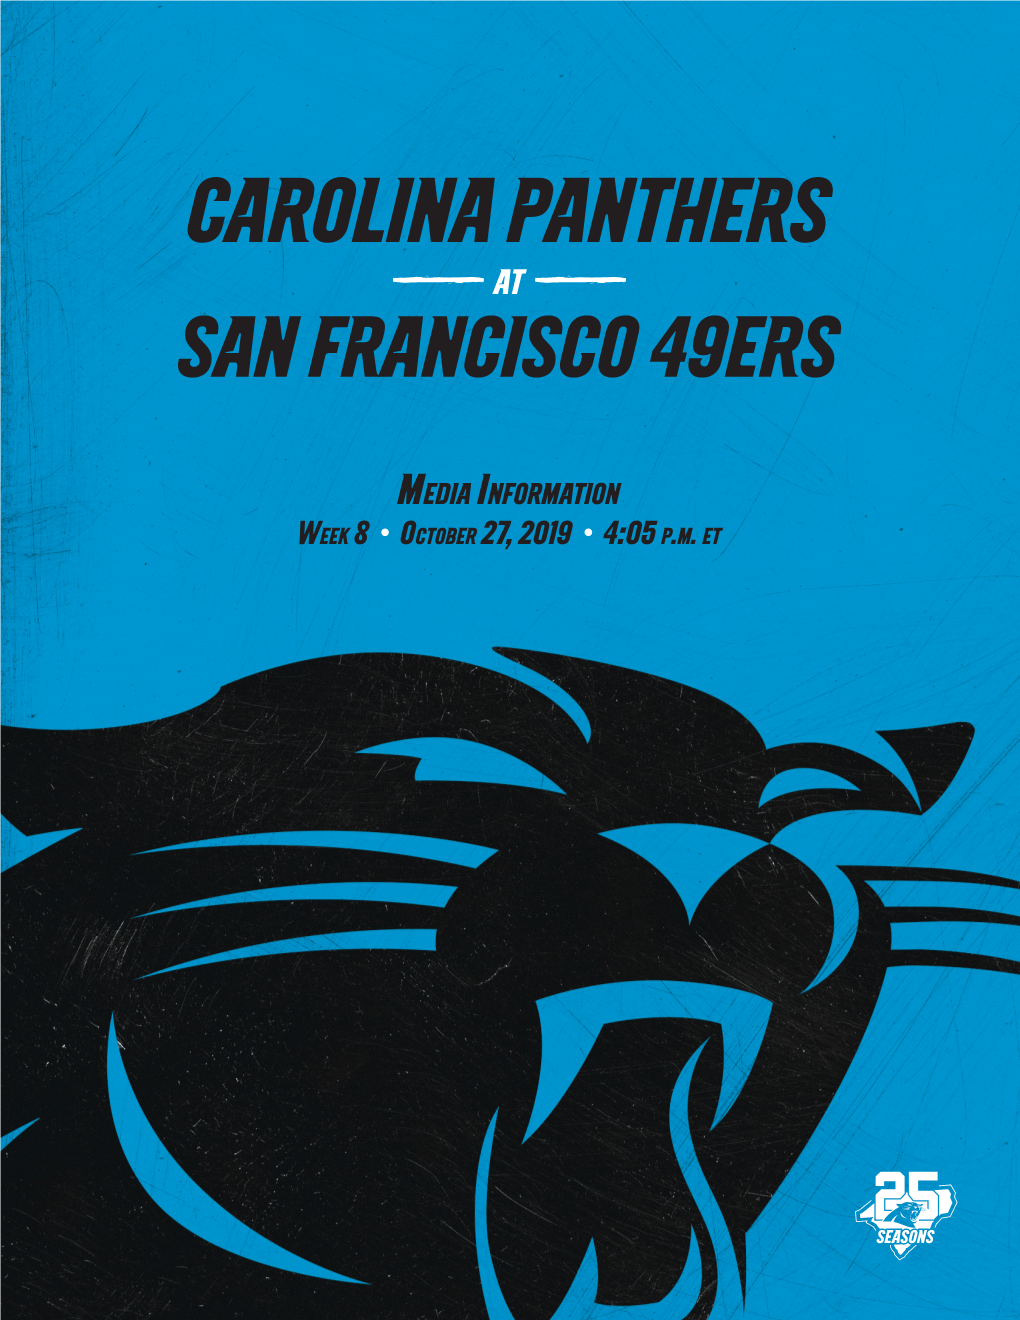 Carolina Panthers at SAN FRANCISCO 49Ers